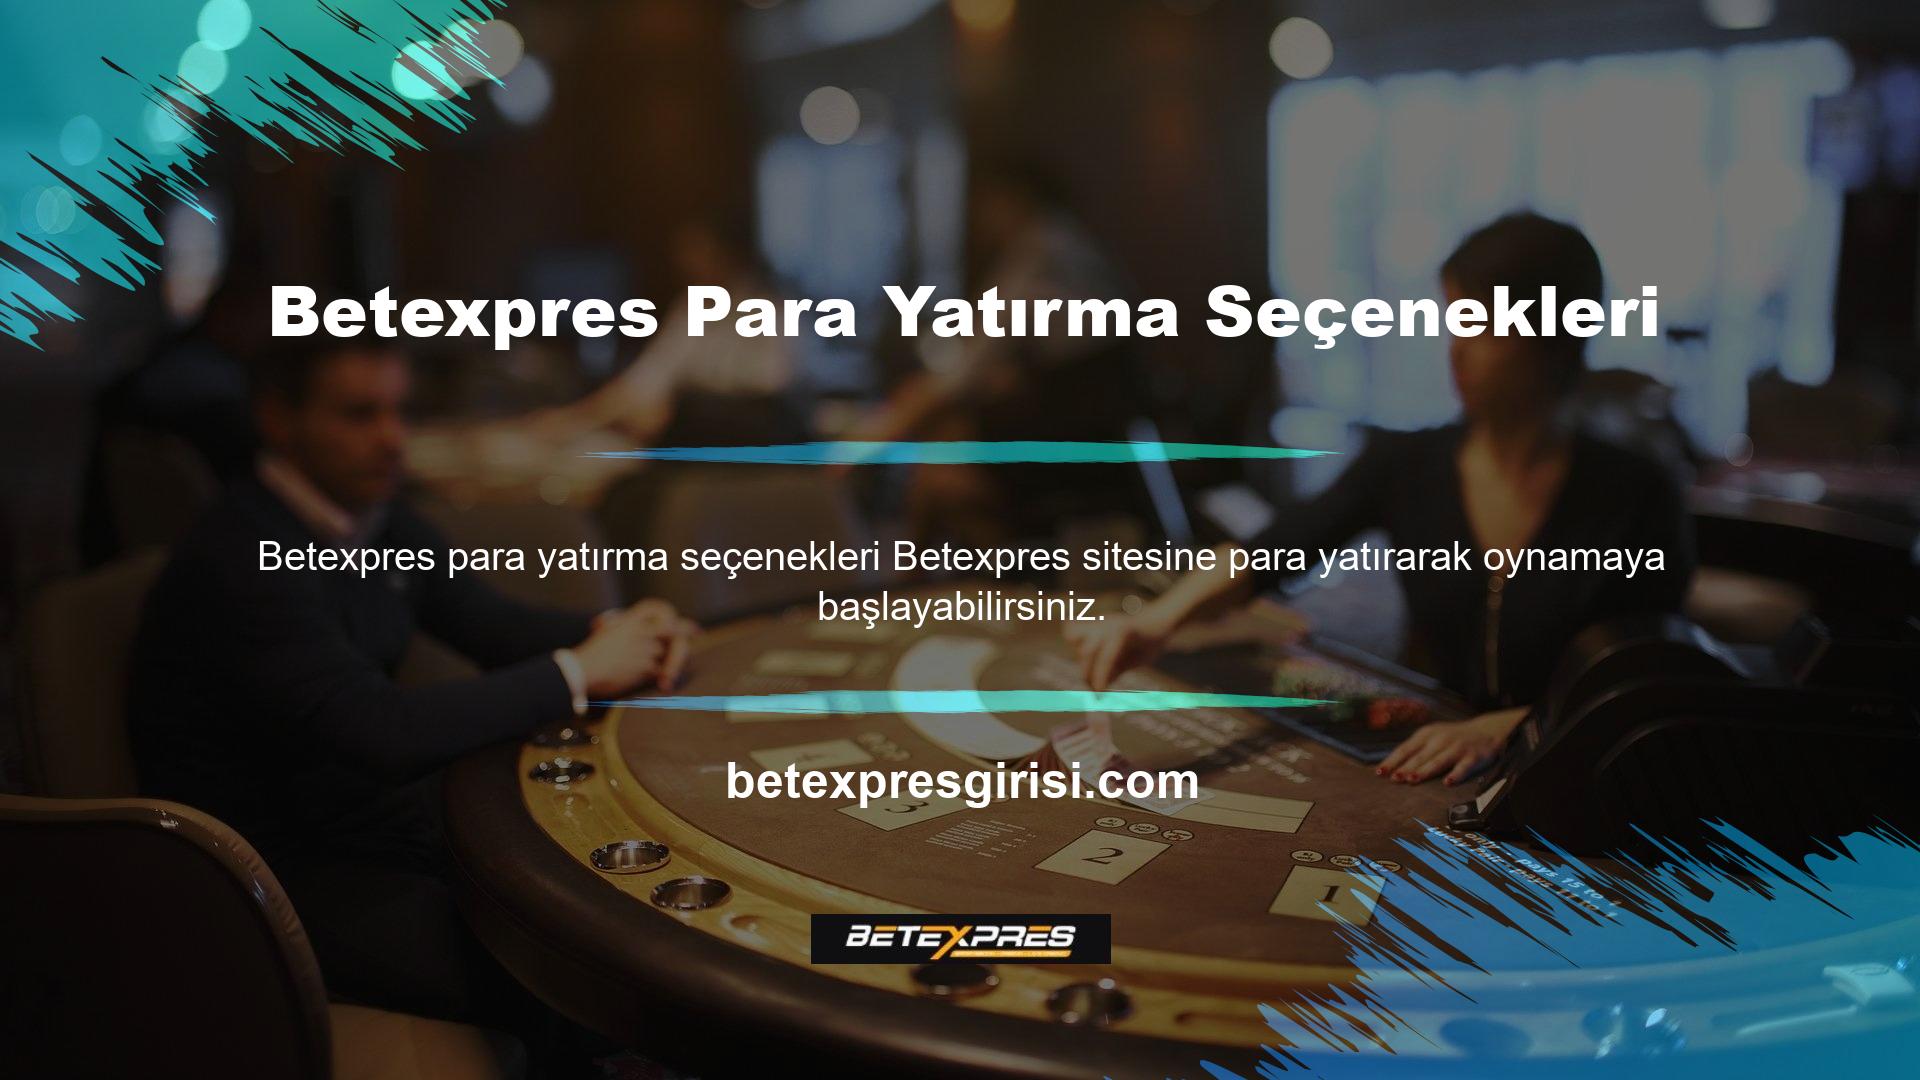 Betexpres para yatırma seçenekleri sitede mevcuttur ve çoğu ödeme yöntemi önemli miktarda kazançla sonuçlanabilir